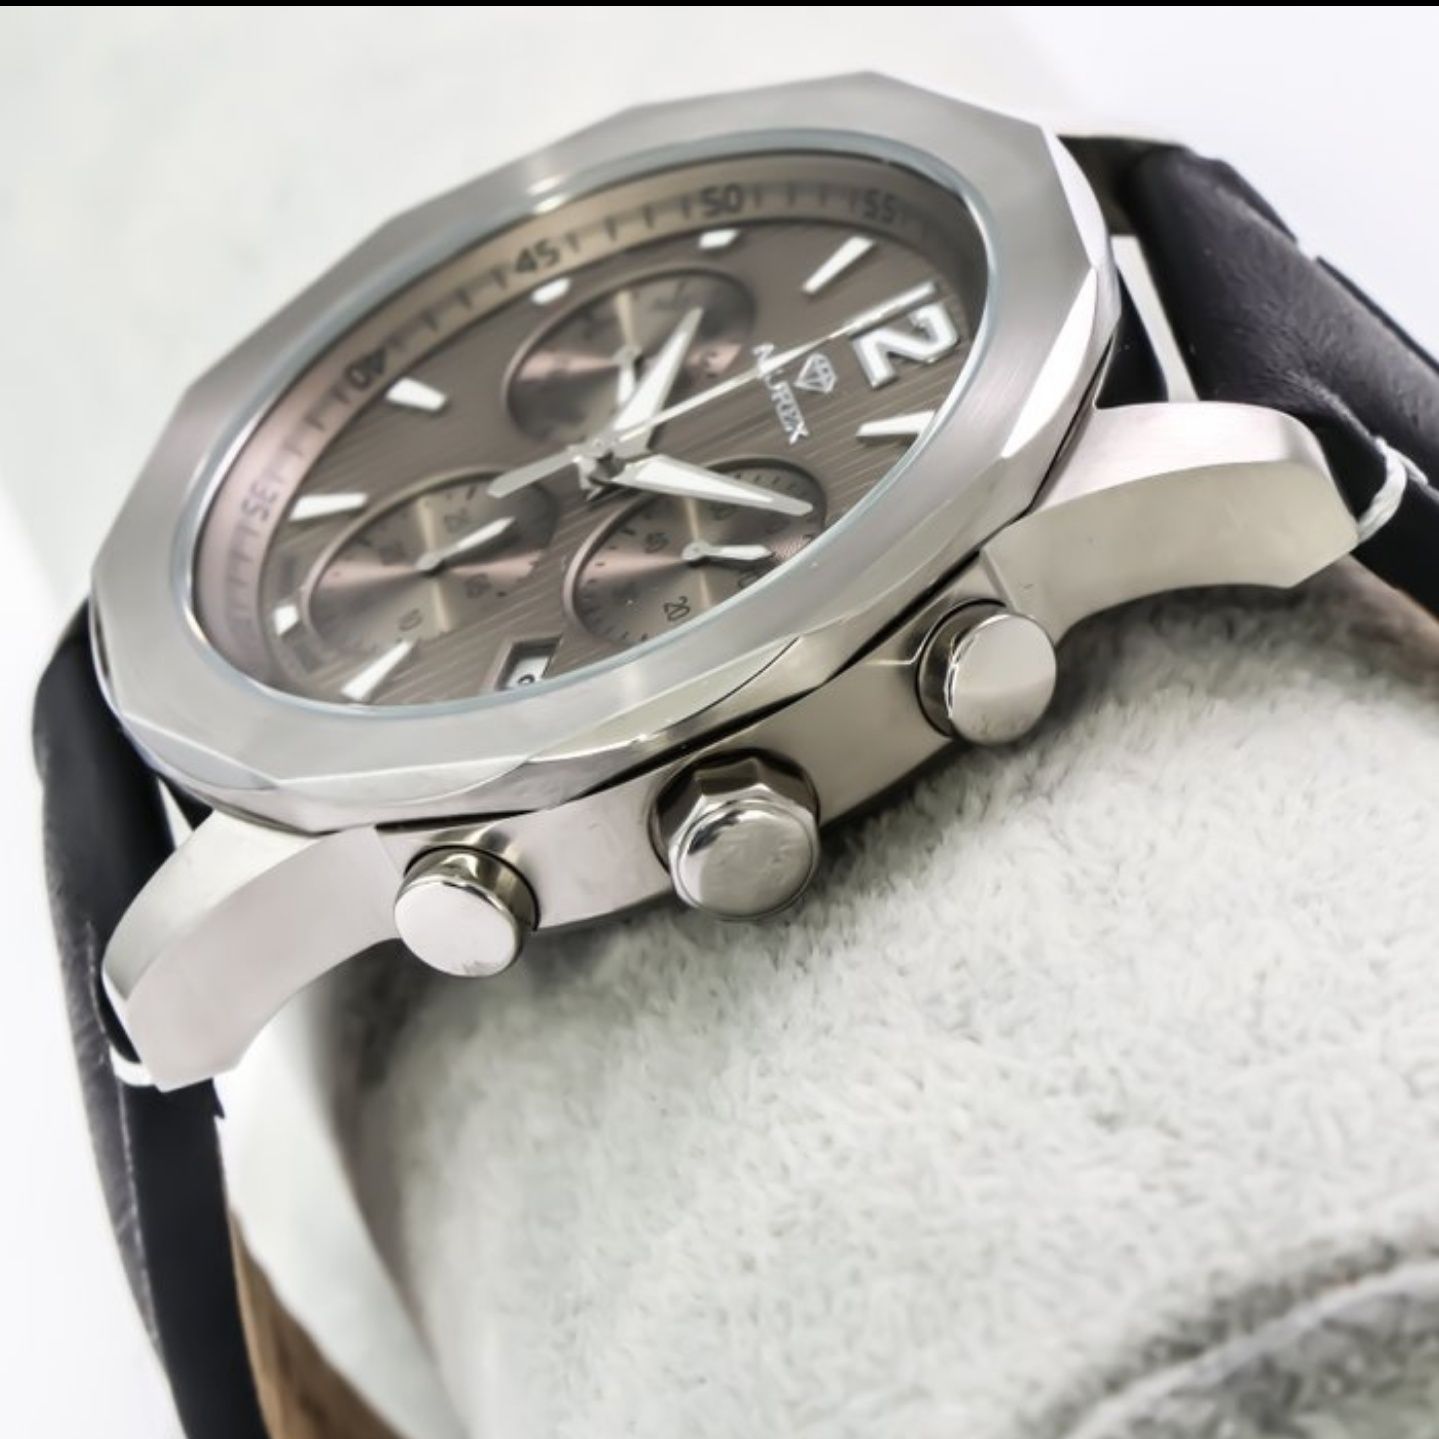 Nowy, szwajcarski zegarek Murex. Gwarancja.